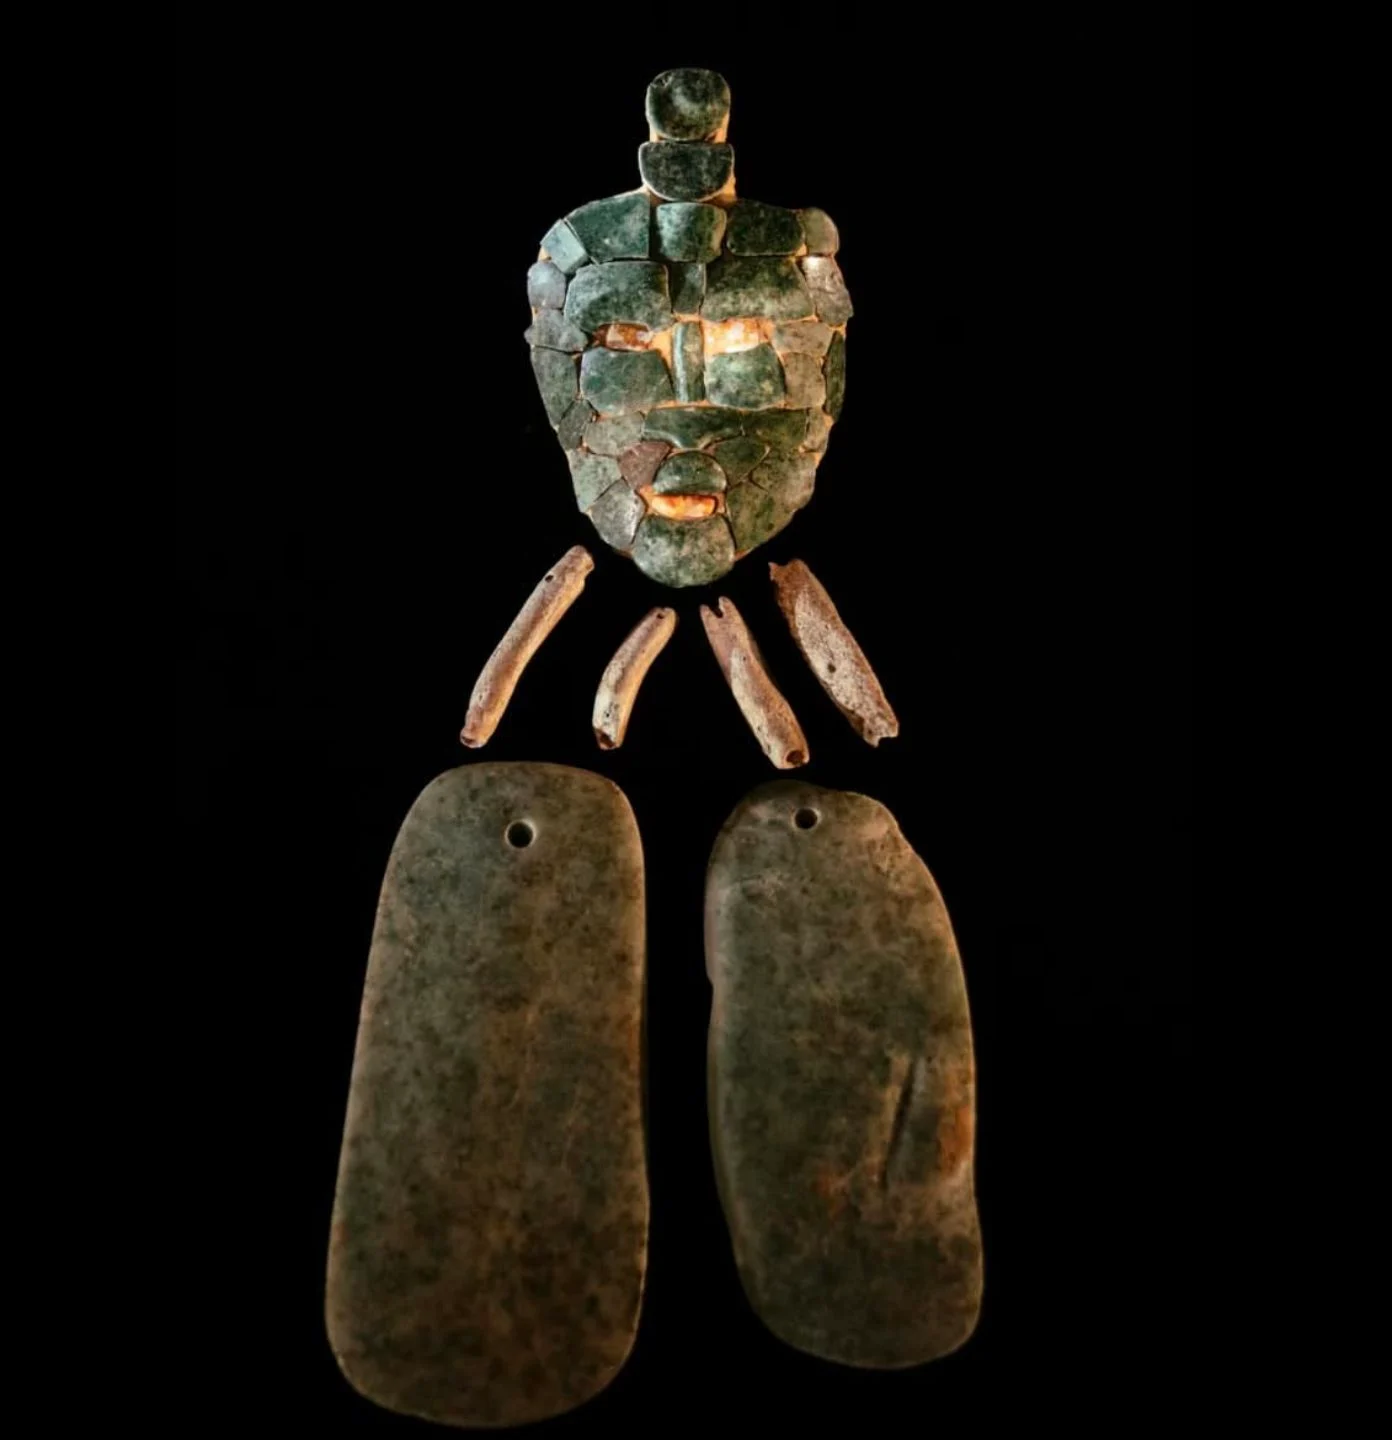 Ongestéiert Graf vun engem onbekannte Maya Kinnek mat Jade Mask entdeckt am Guatemala 1